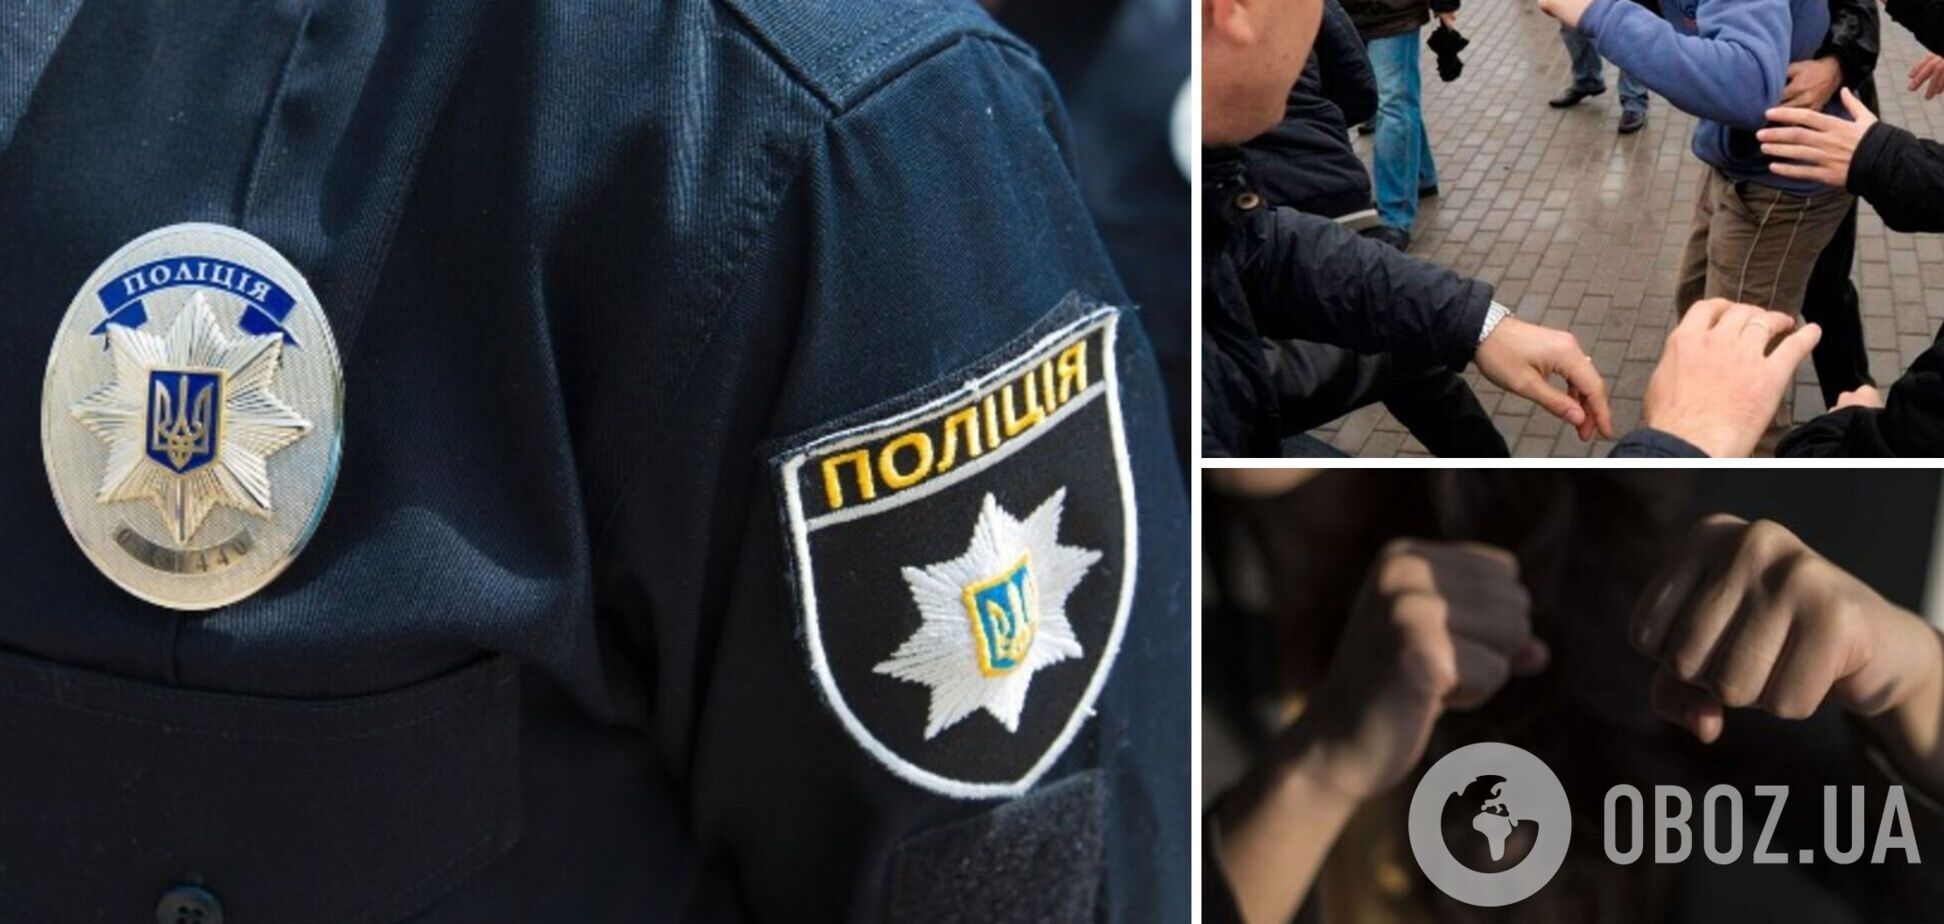 Российская ИПСО не прошла: в Киеве и Харькове полицейские предотвратили конфликт между молодежью. Фото и видео